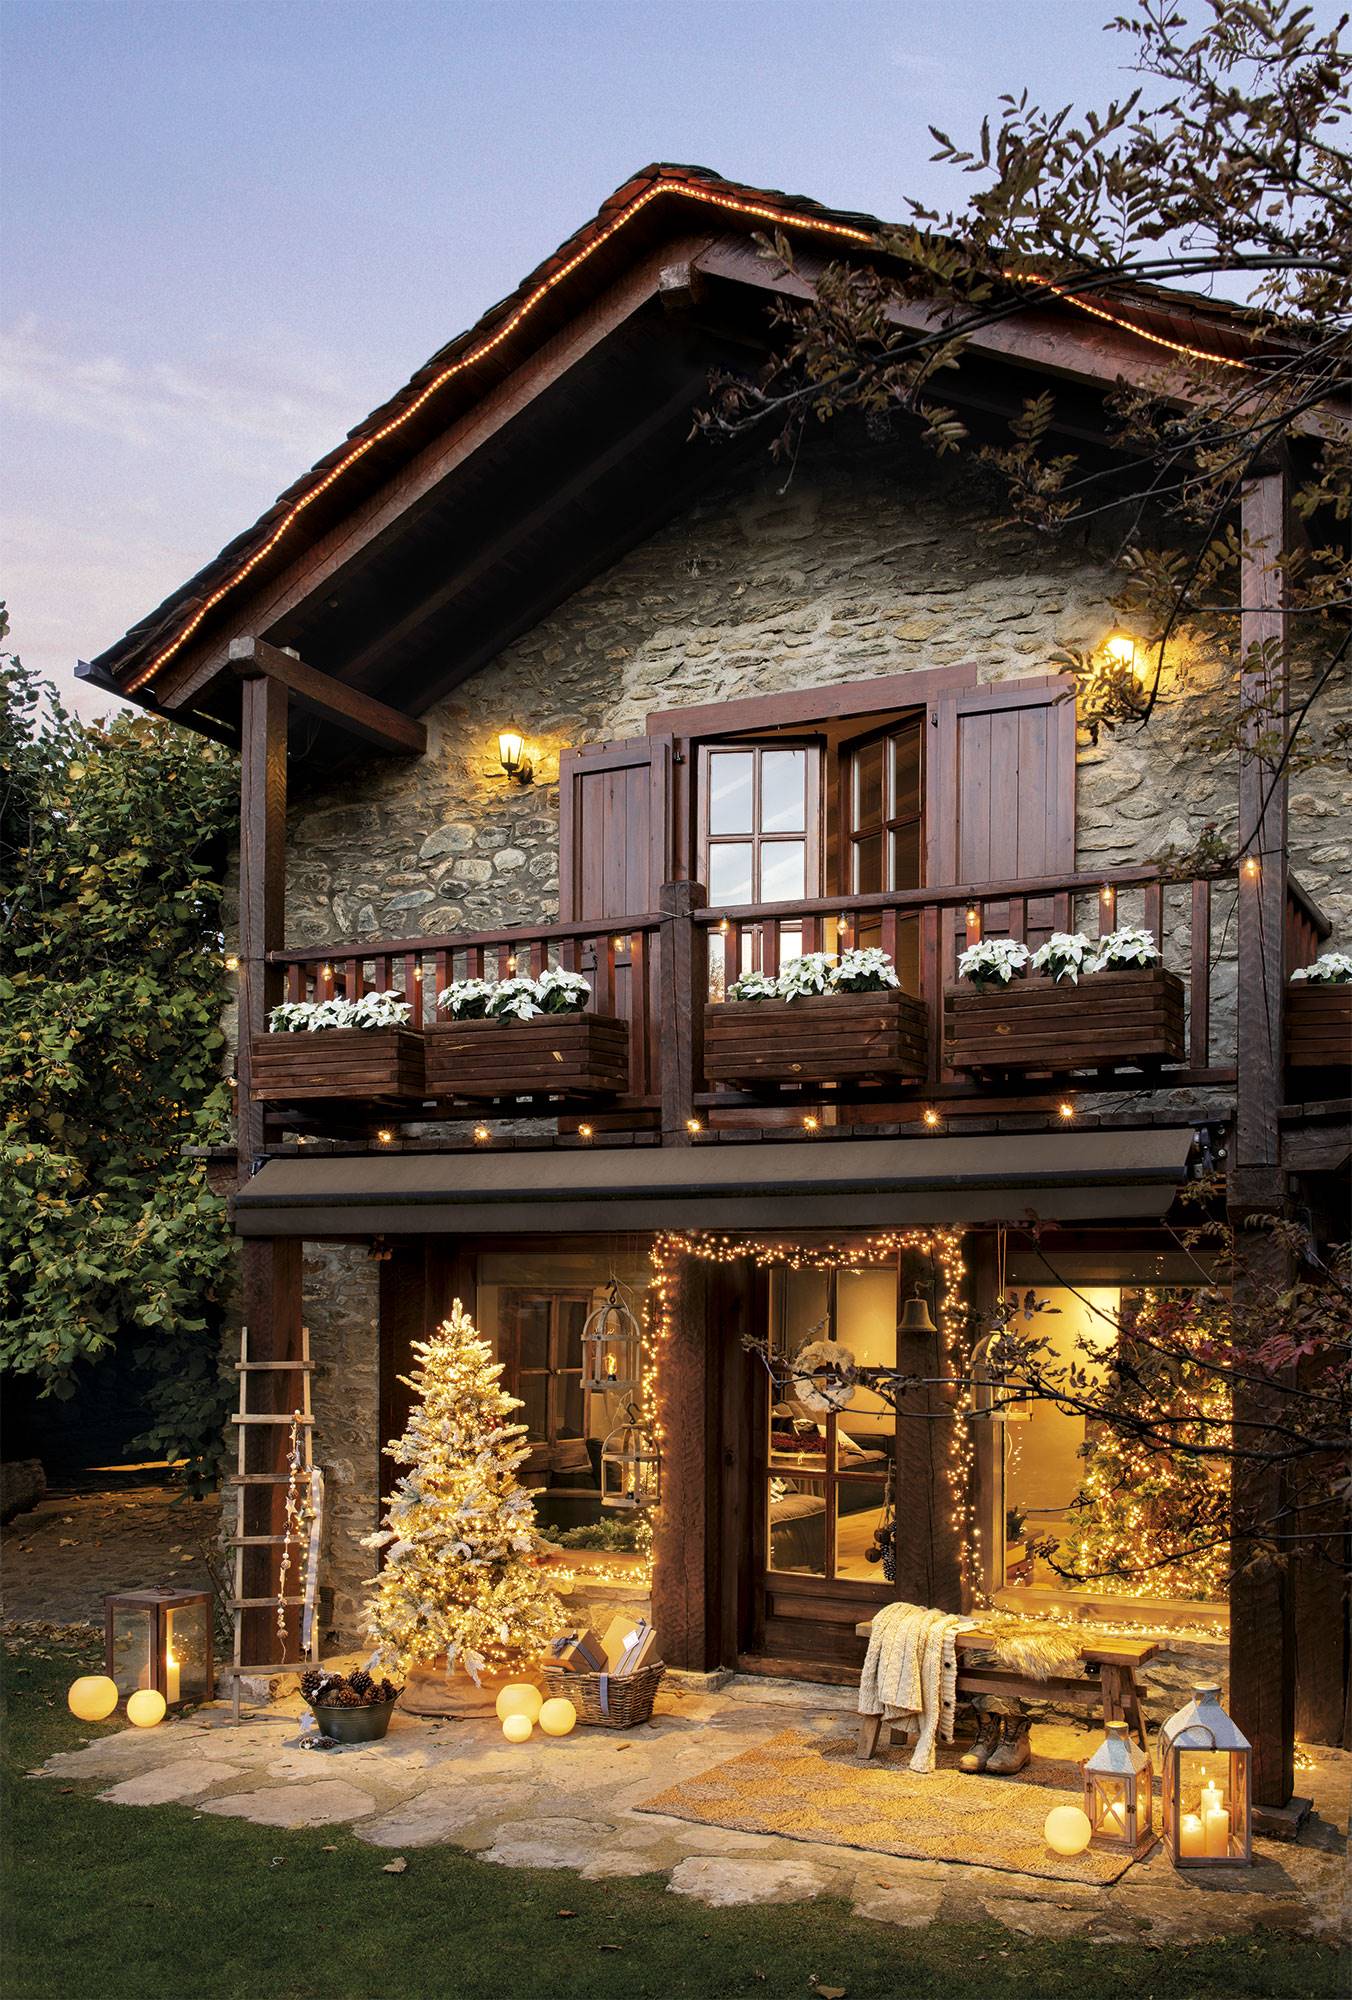 Fachada de madera y piedra con decoración navideña.